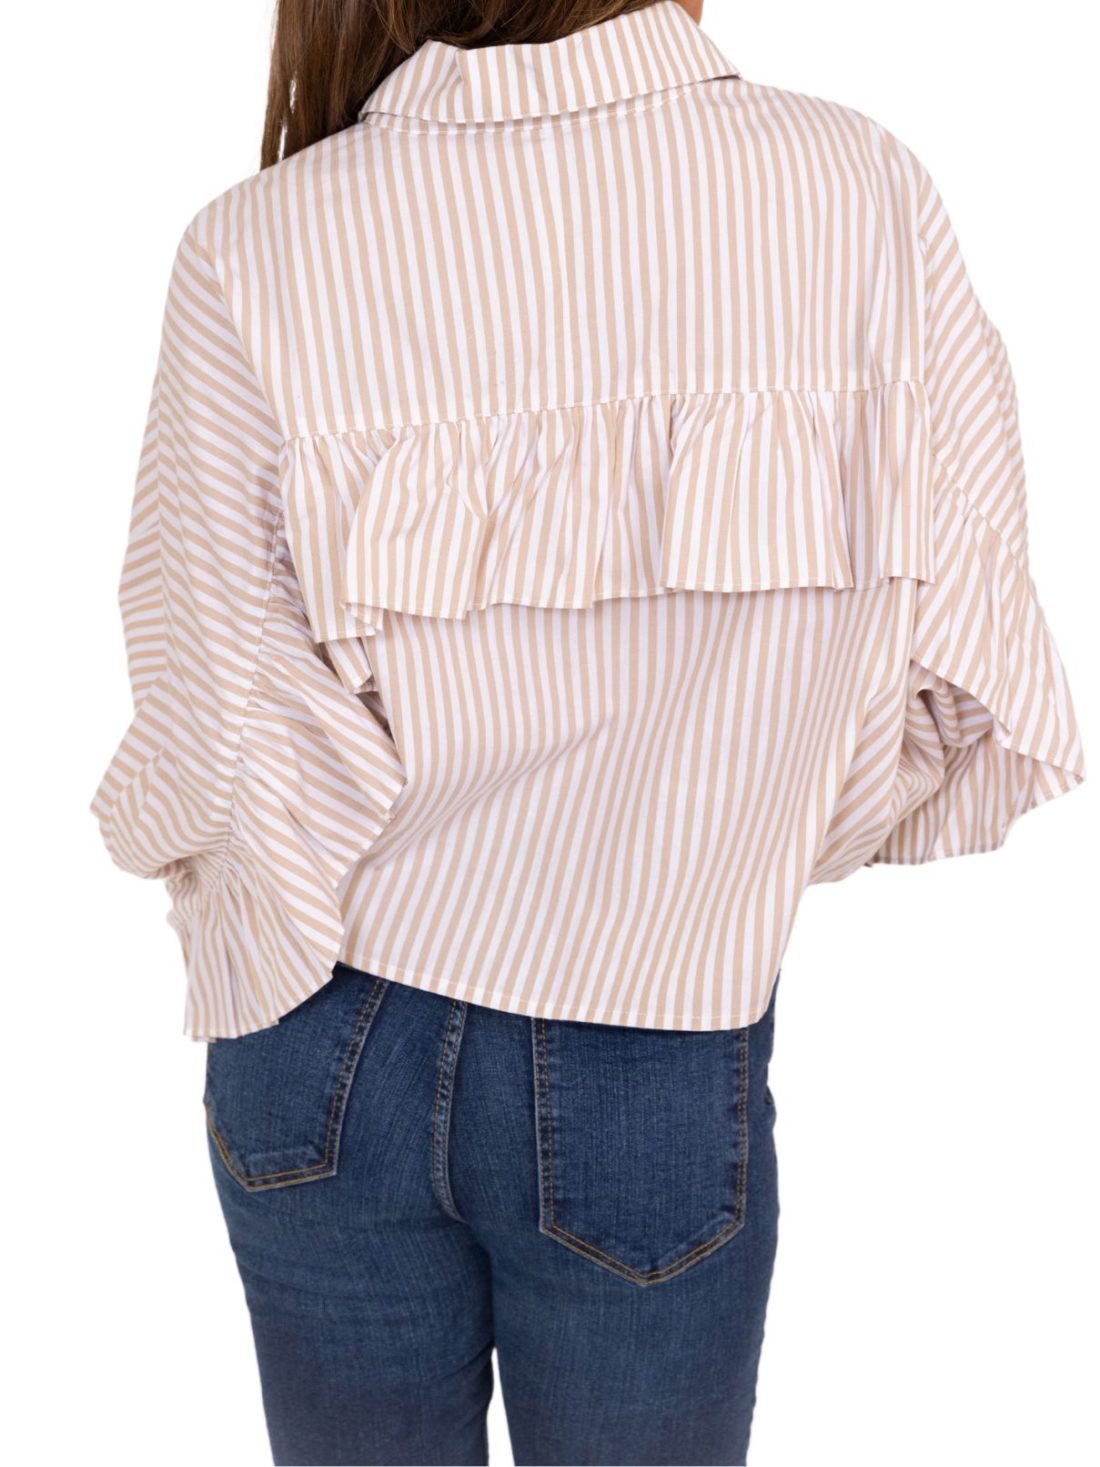 karlie poplin stripe blouse in tan